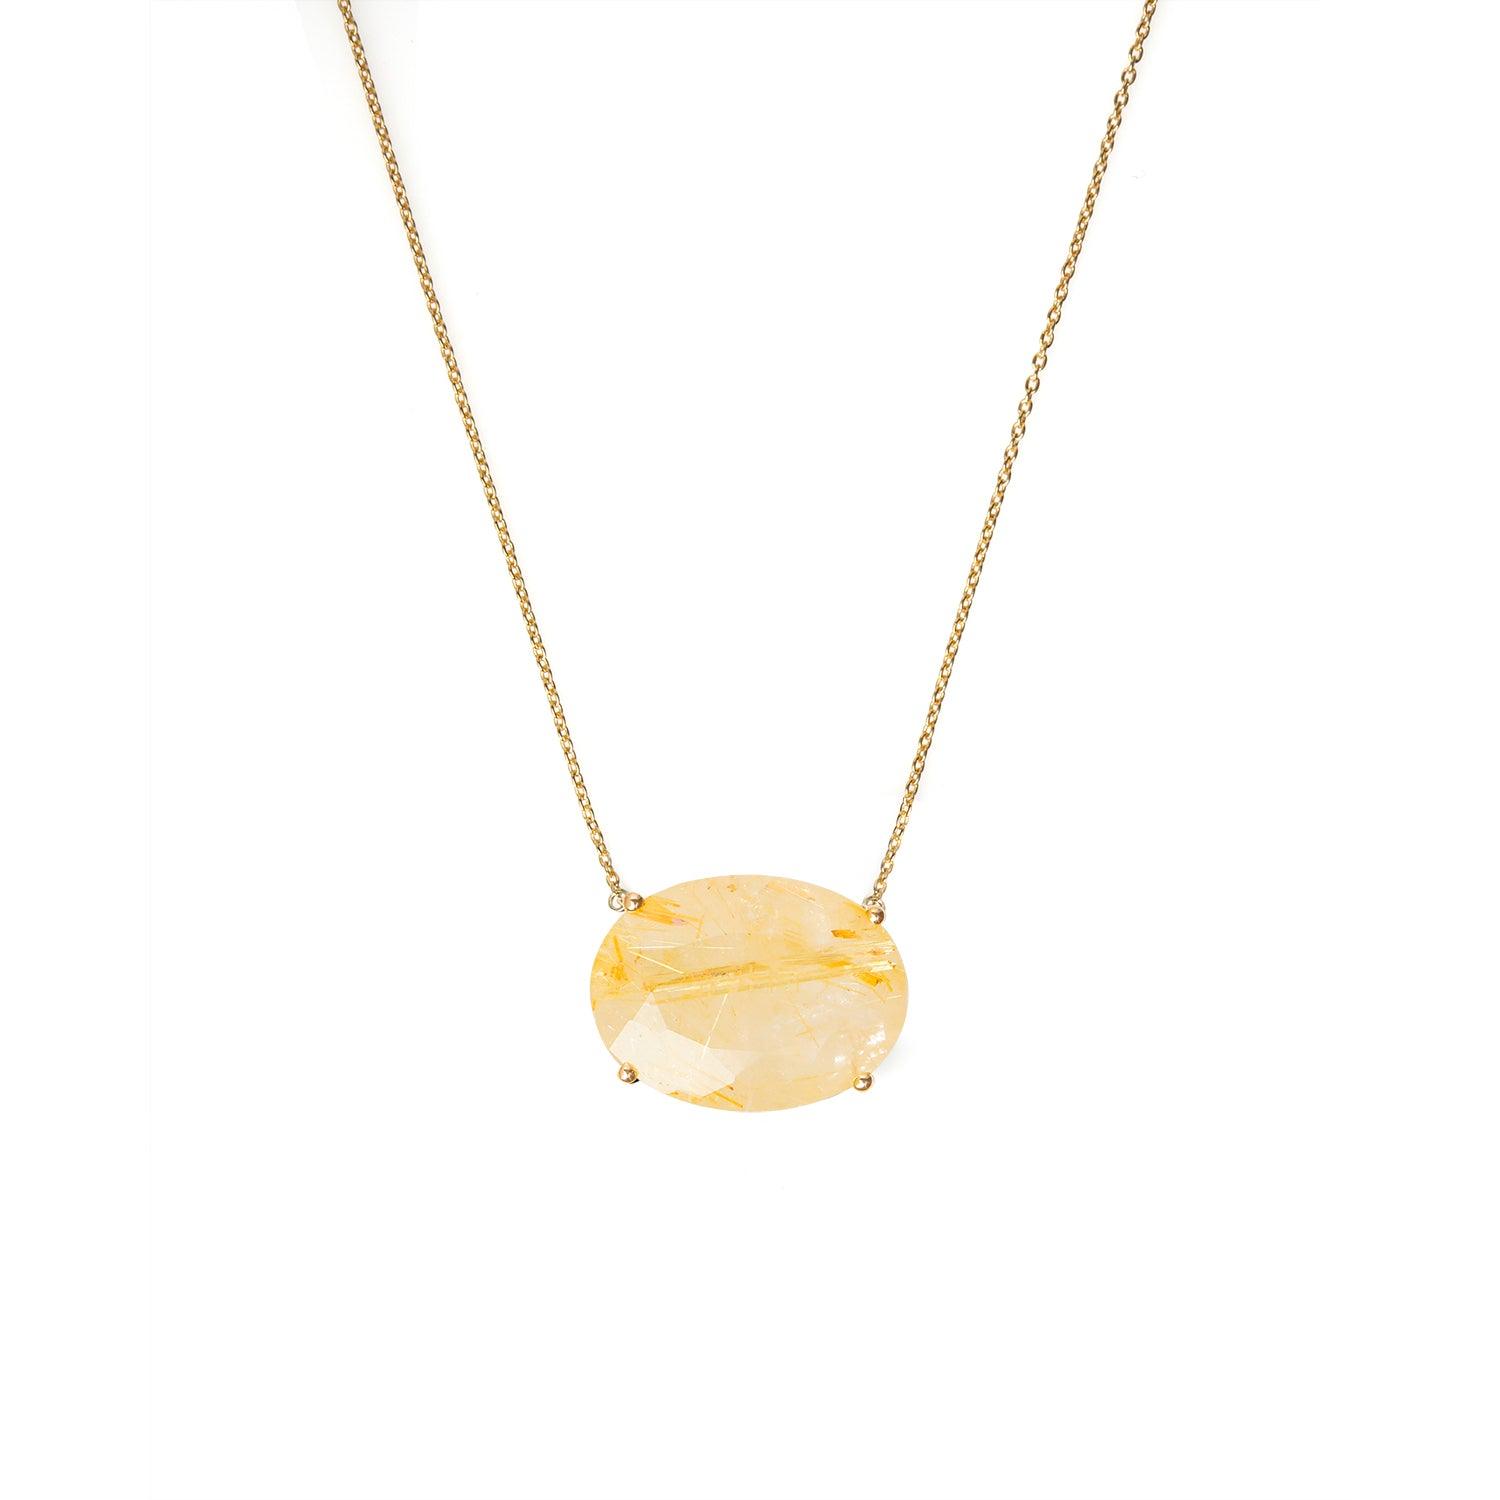 Golden Rutile Quartz 14K Gold Over 925 Silver Chain Pendant Necklace Jewelry - YoTreasure